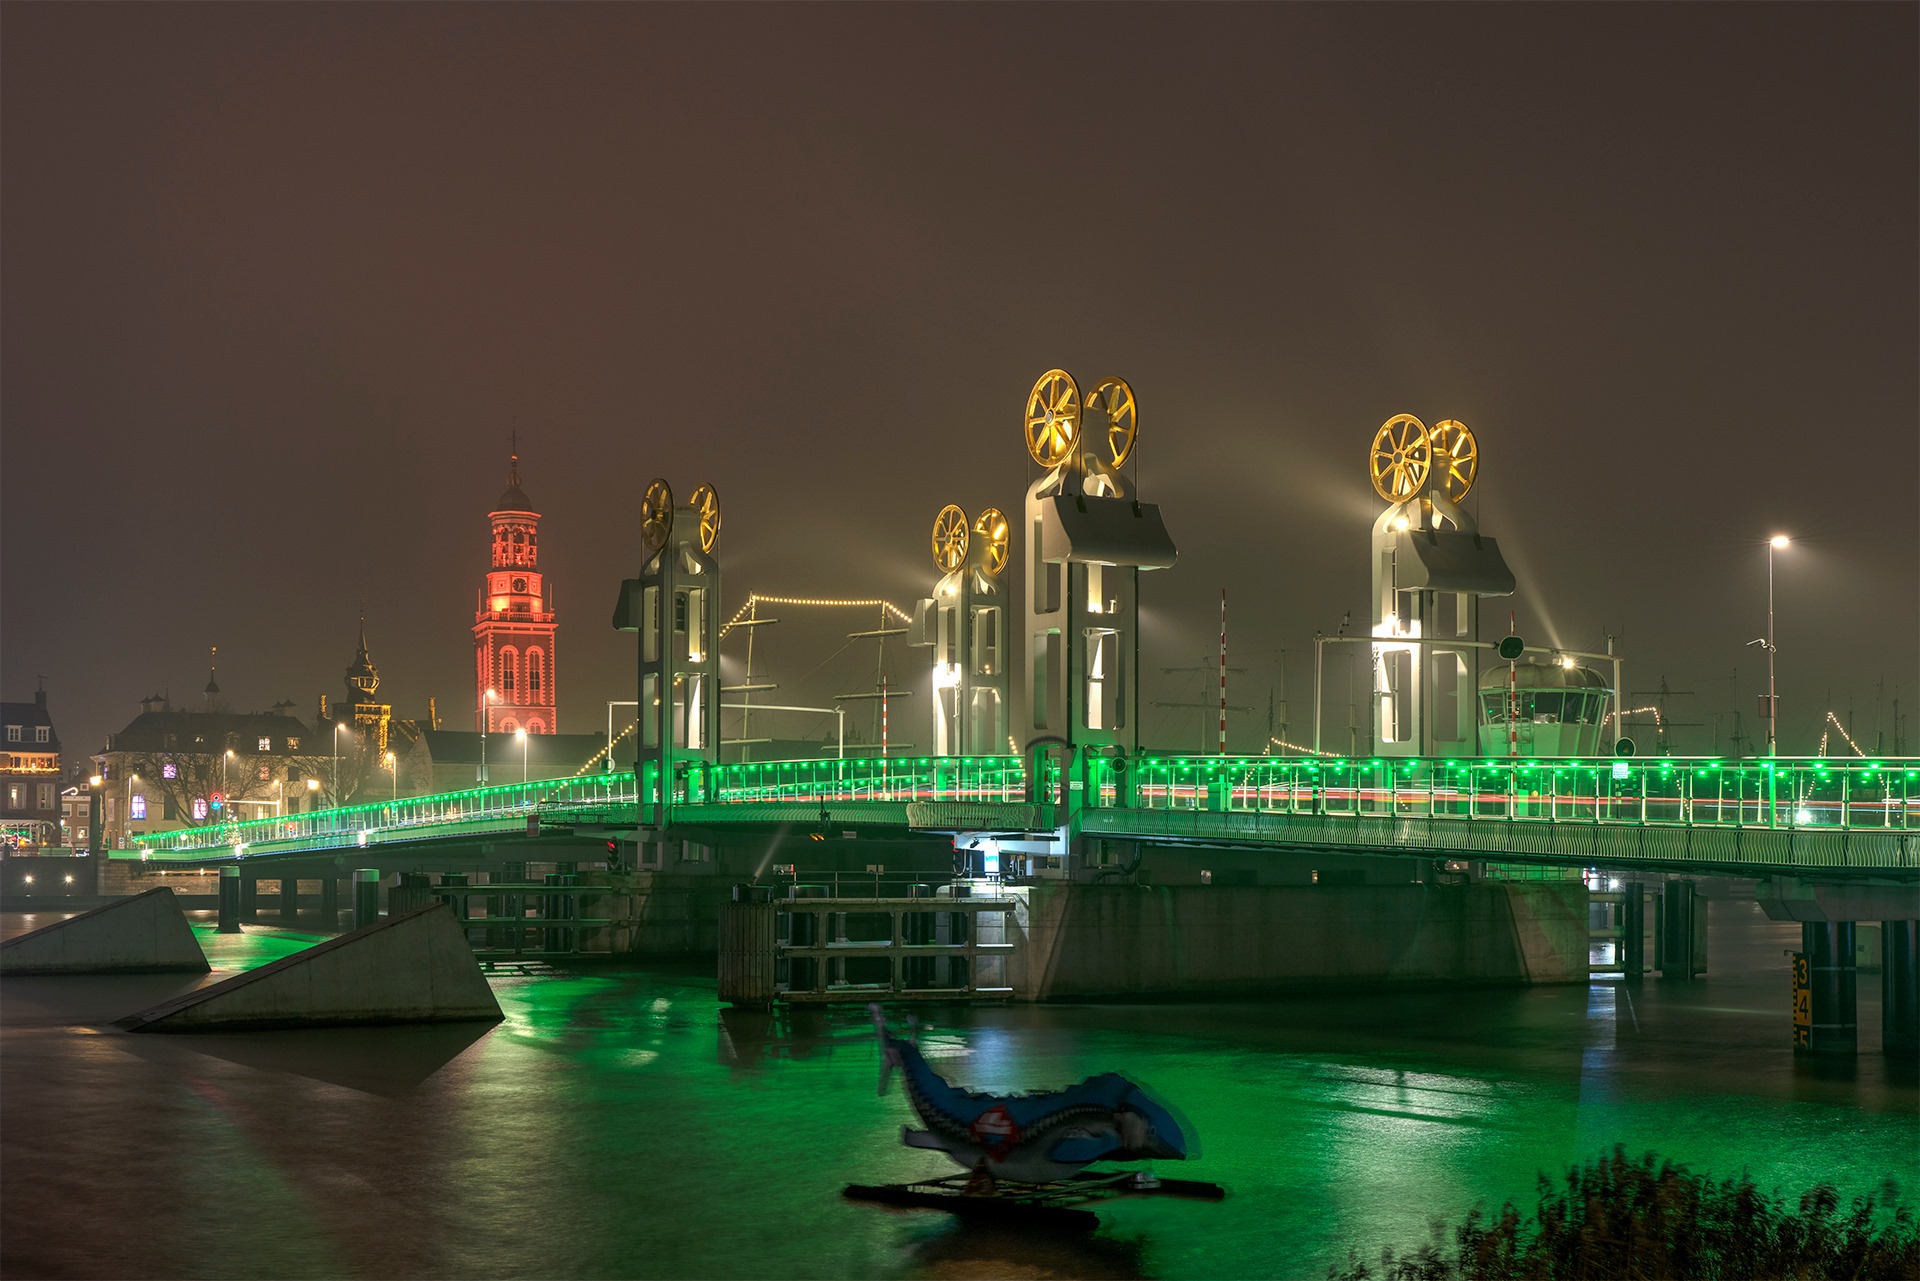 Stadsbrug kleurt groen tijdens Nacht van de Nacht op zaterdag 30 oktober